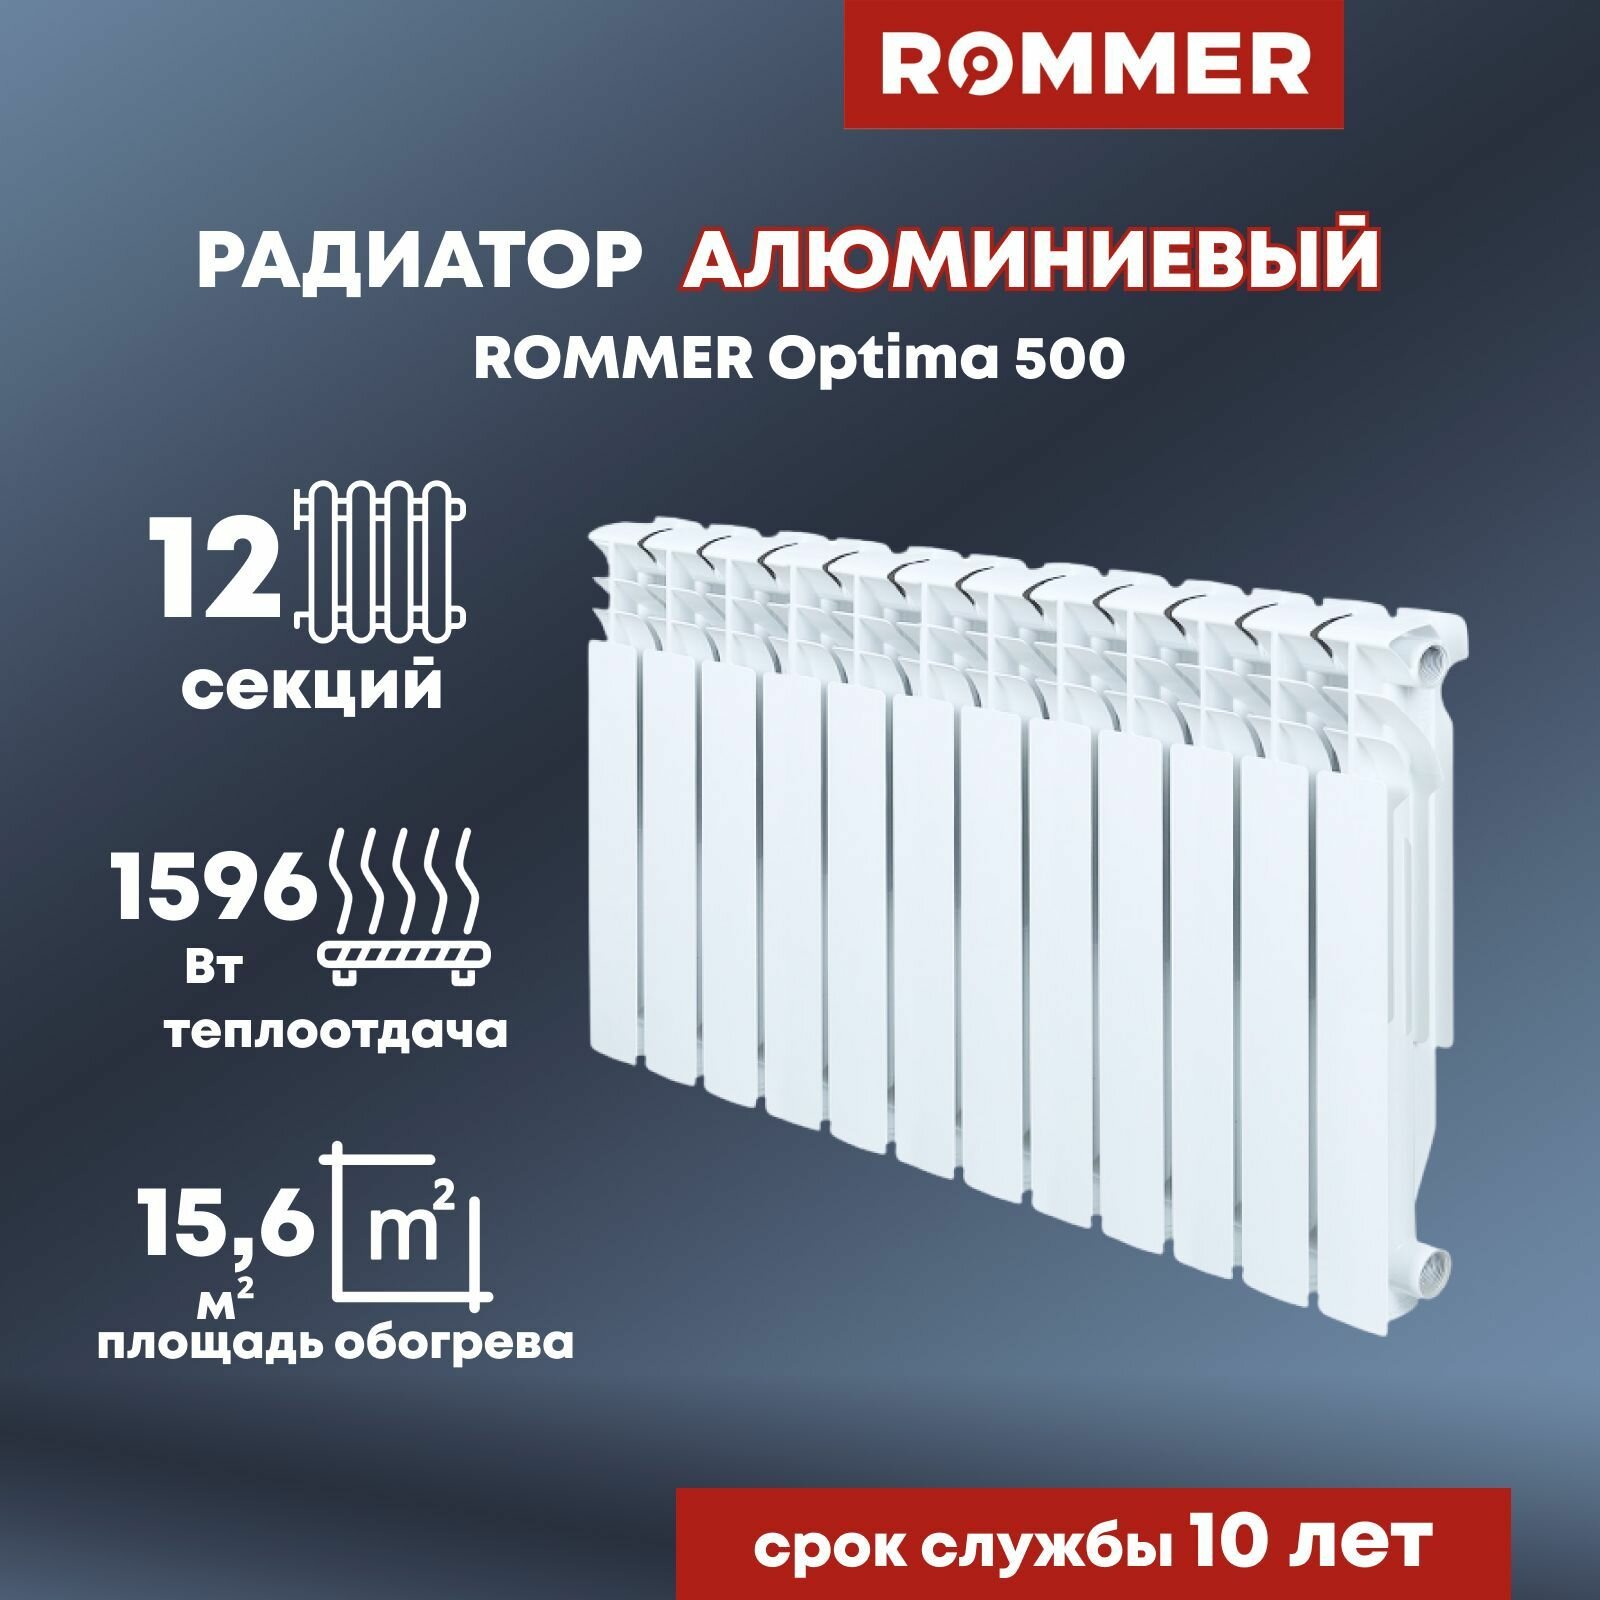 Радиатор алюминиевый ROMMER Optima 500 12 секций цвет белый